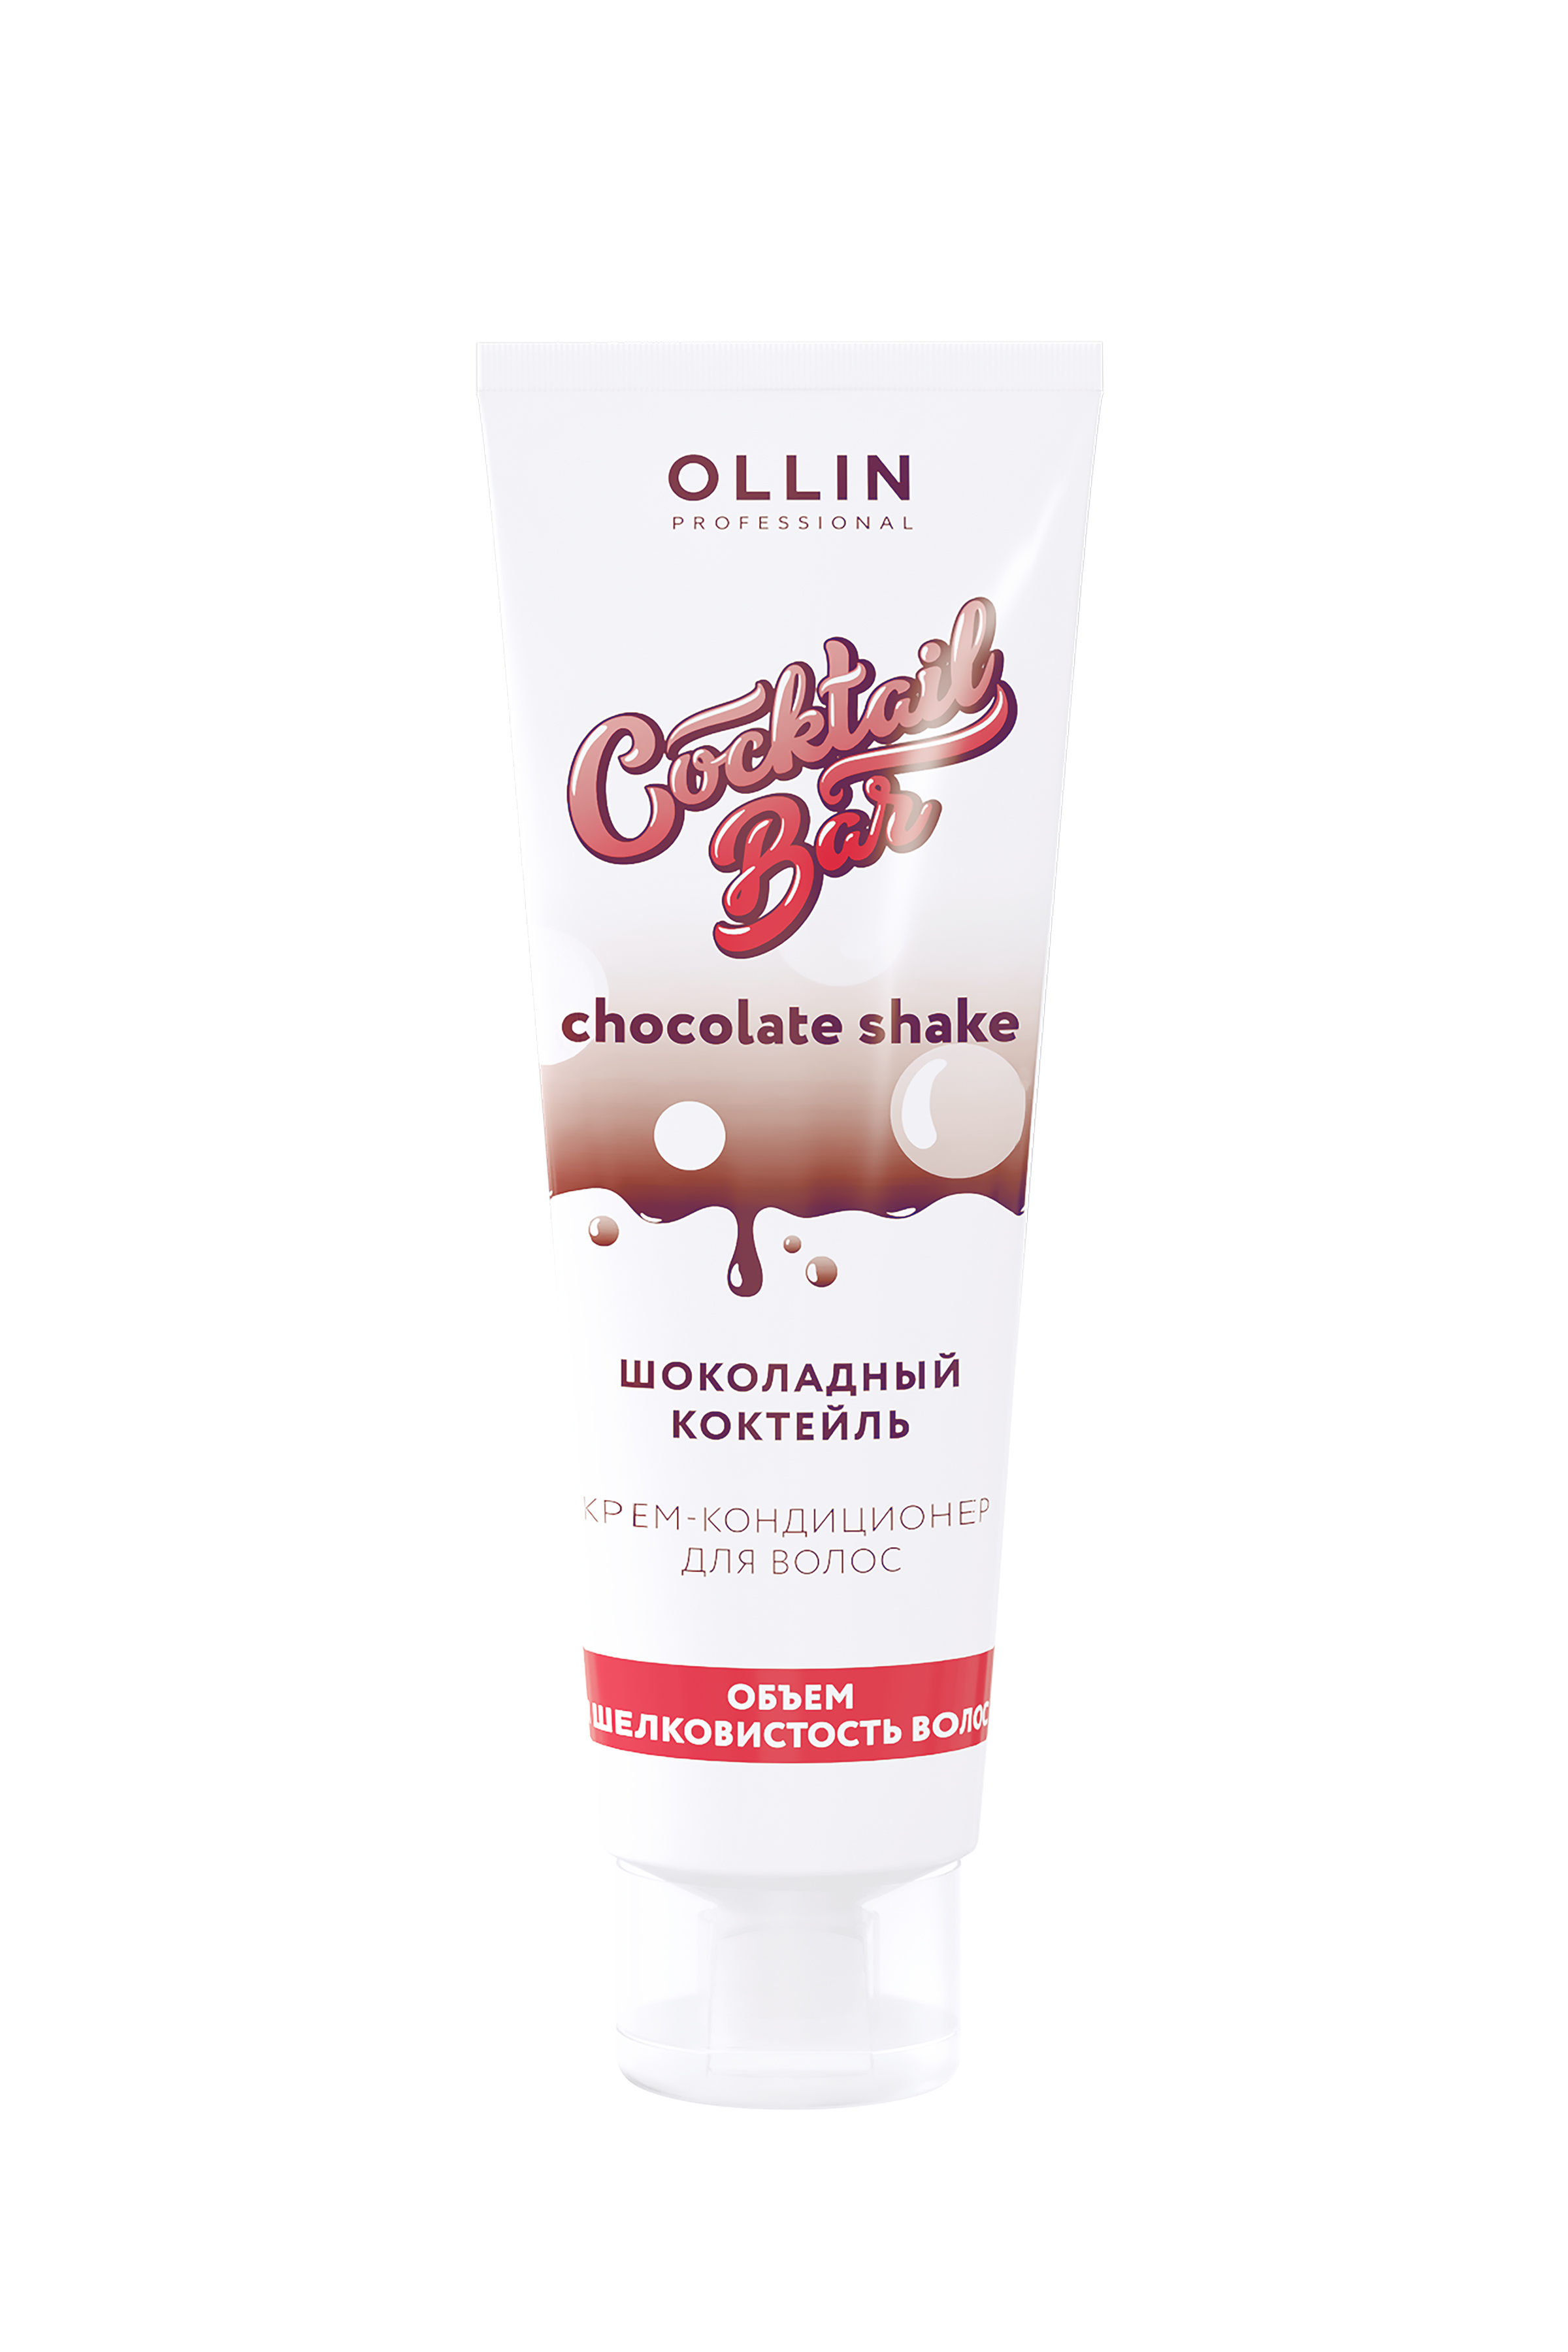 OLLIN Cocktail BAR Крем-кондиционер "Шоколадный коктейль" объём и шелковистость волос 250мл